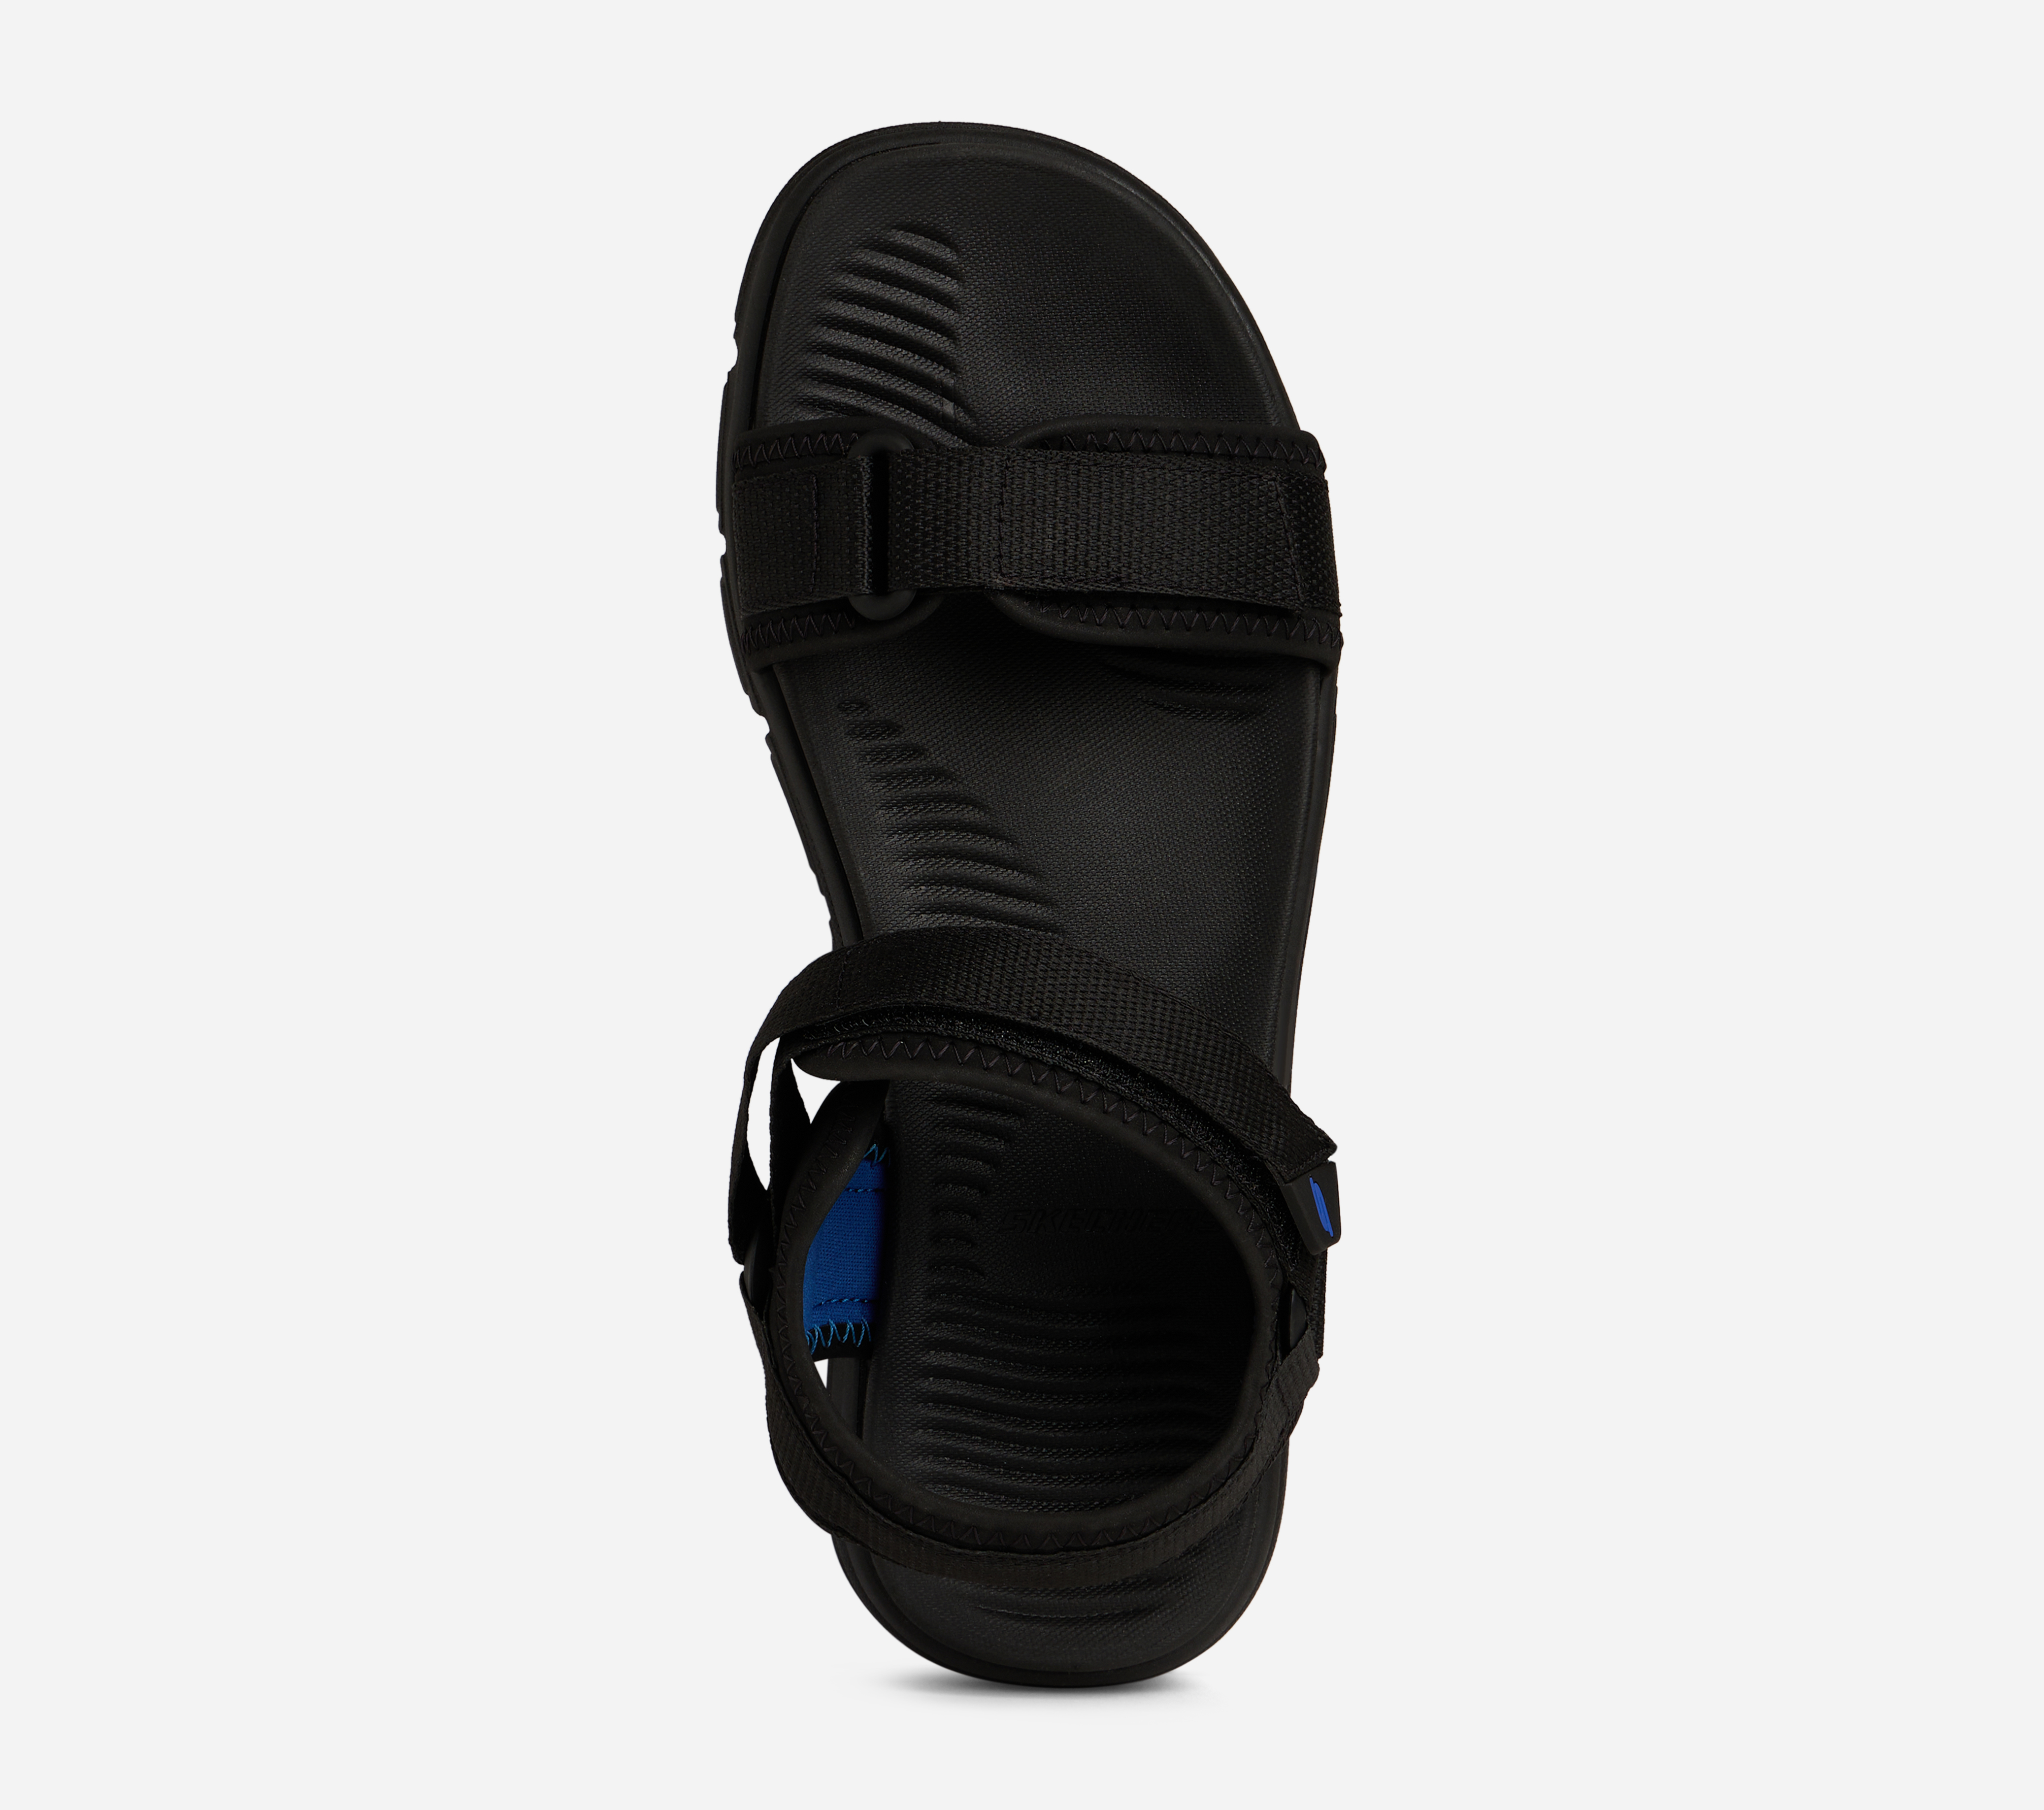 WIND SWELL - SWELL SWIFT, BLACK/BLUE Footwear Bottom View